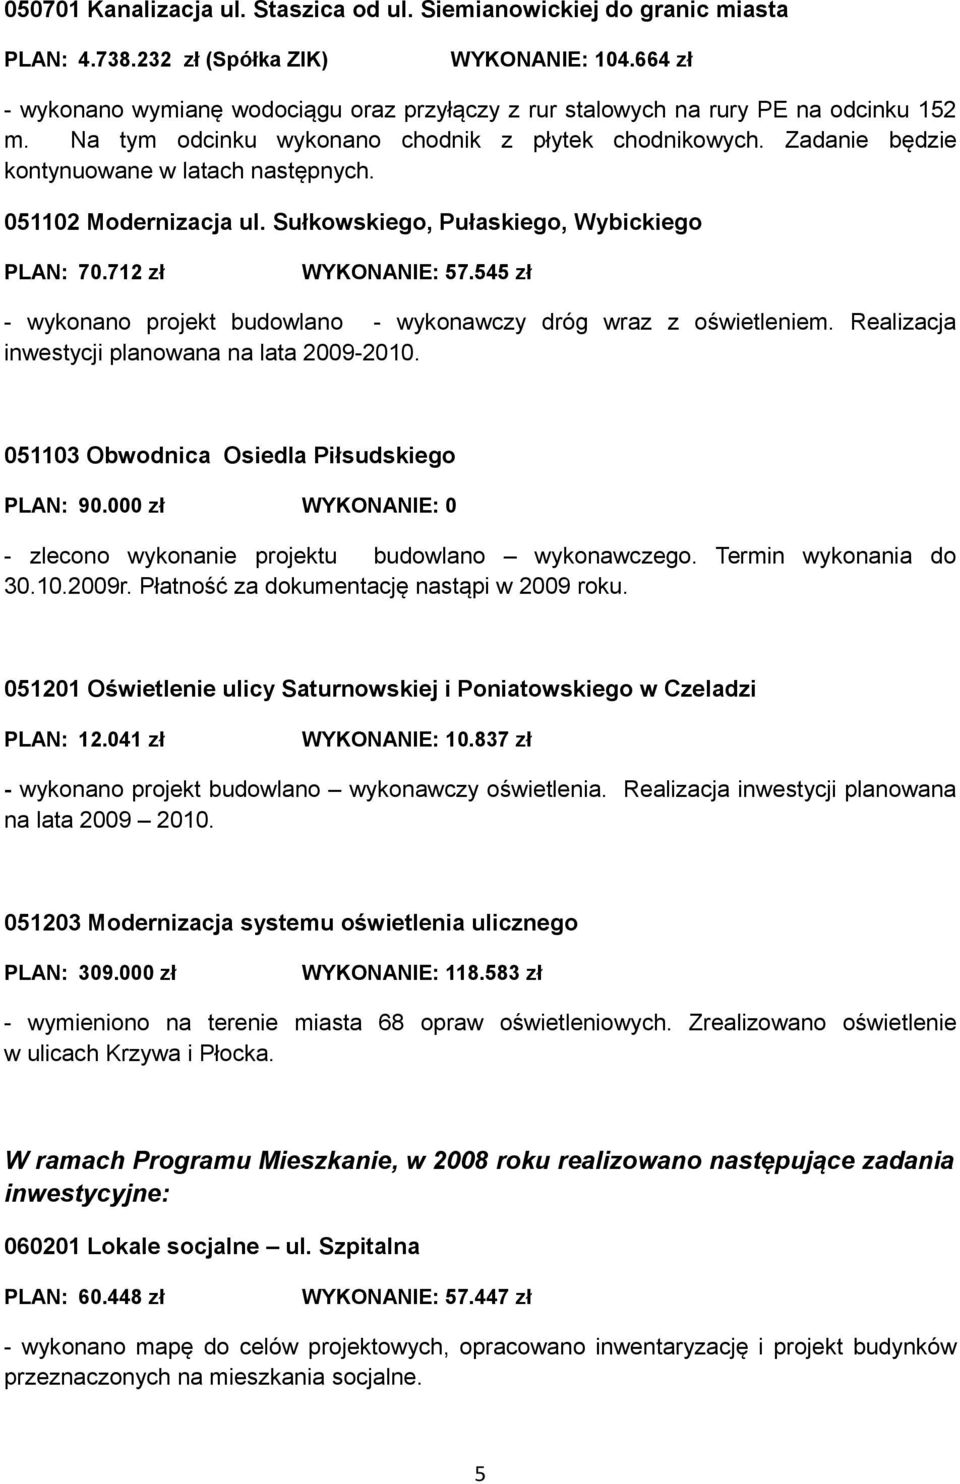 051102 Modernizacja ul. Sułkowskiego, Pułaskiego, Wybickiego PLAN: 70.712 zł WYKONANIE: 57.545 zł - wykonano projekt budowlano - wykonawczy dróg wraz z oświetleniem.